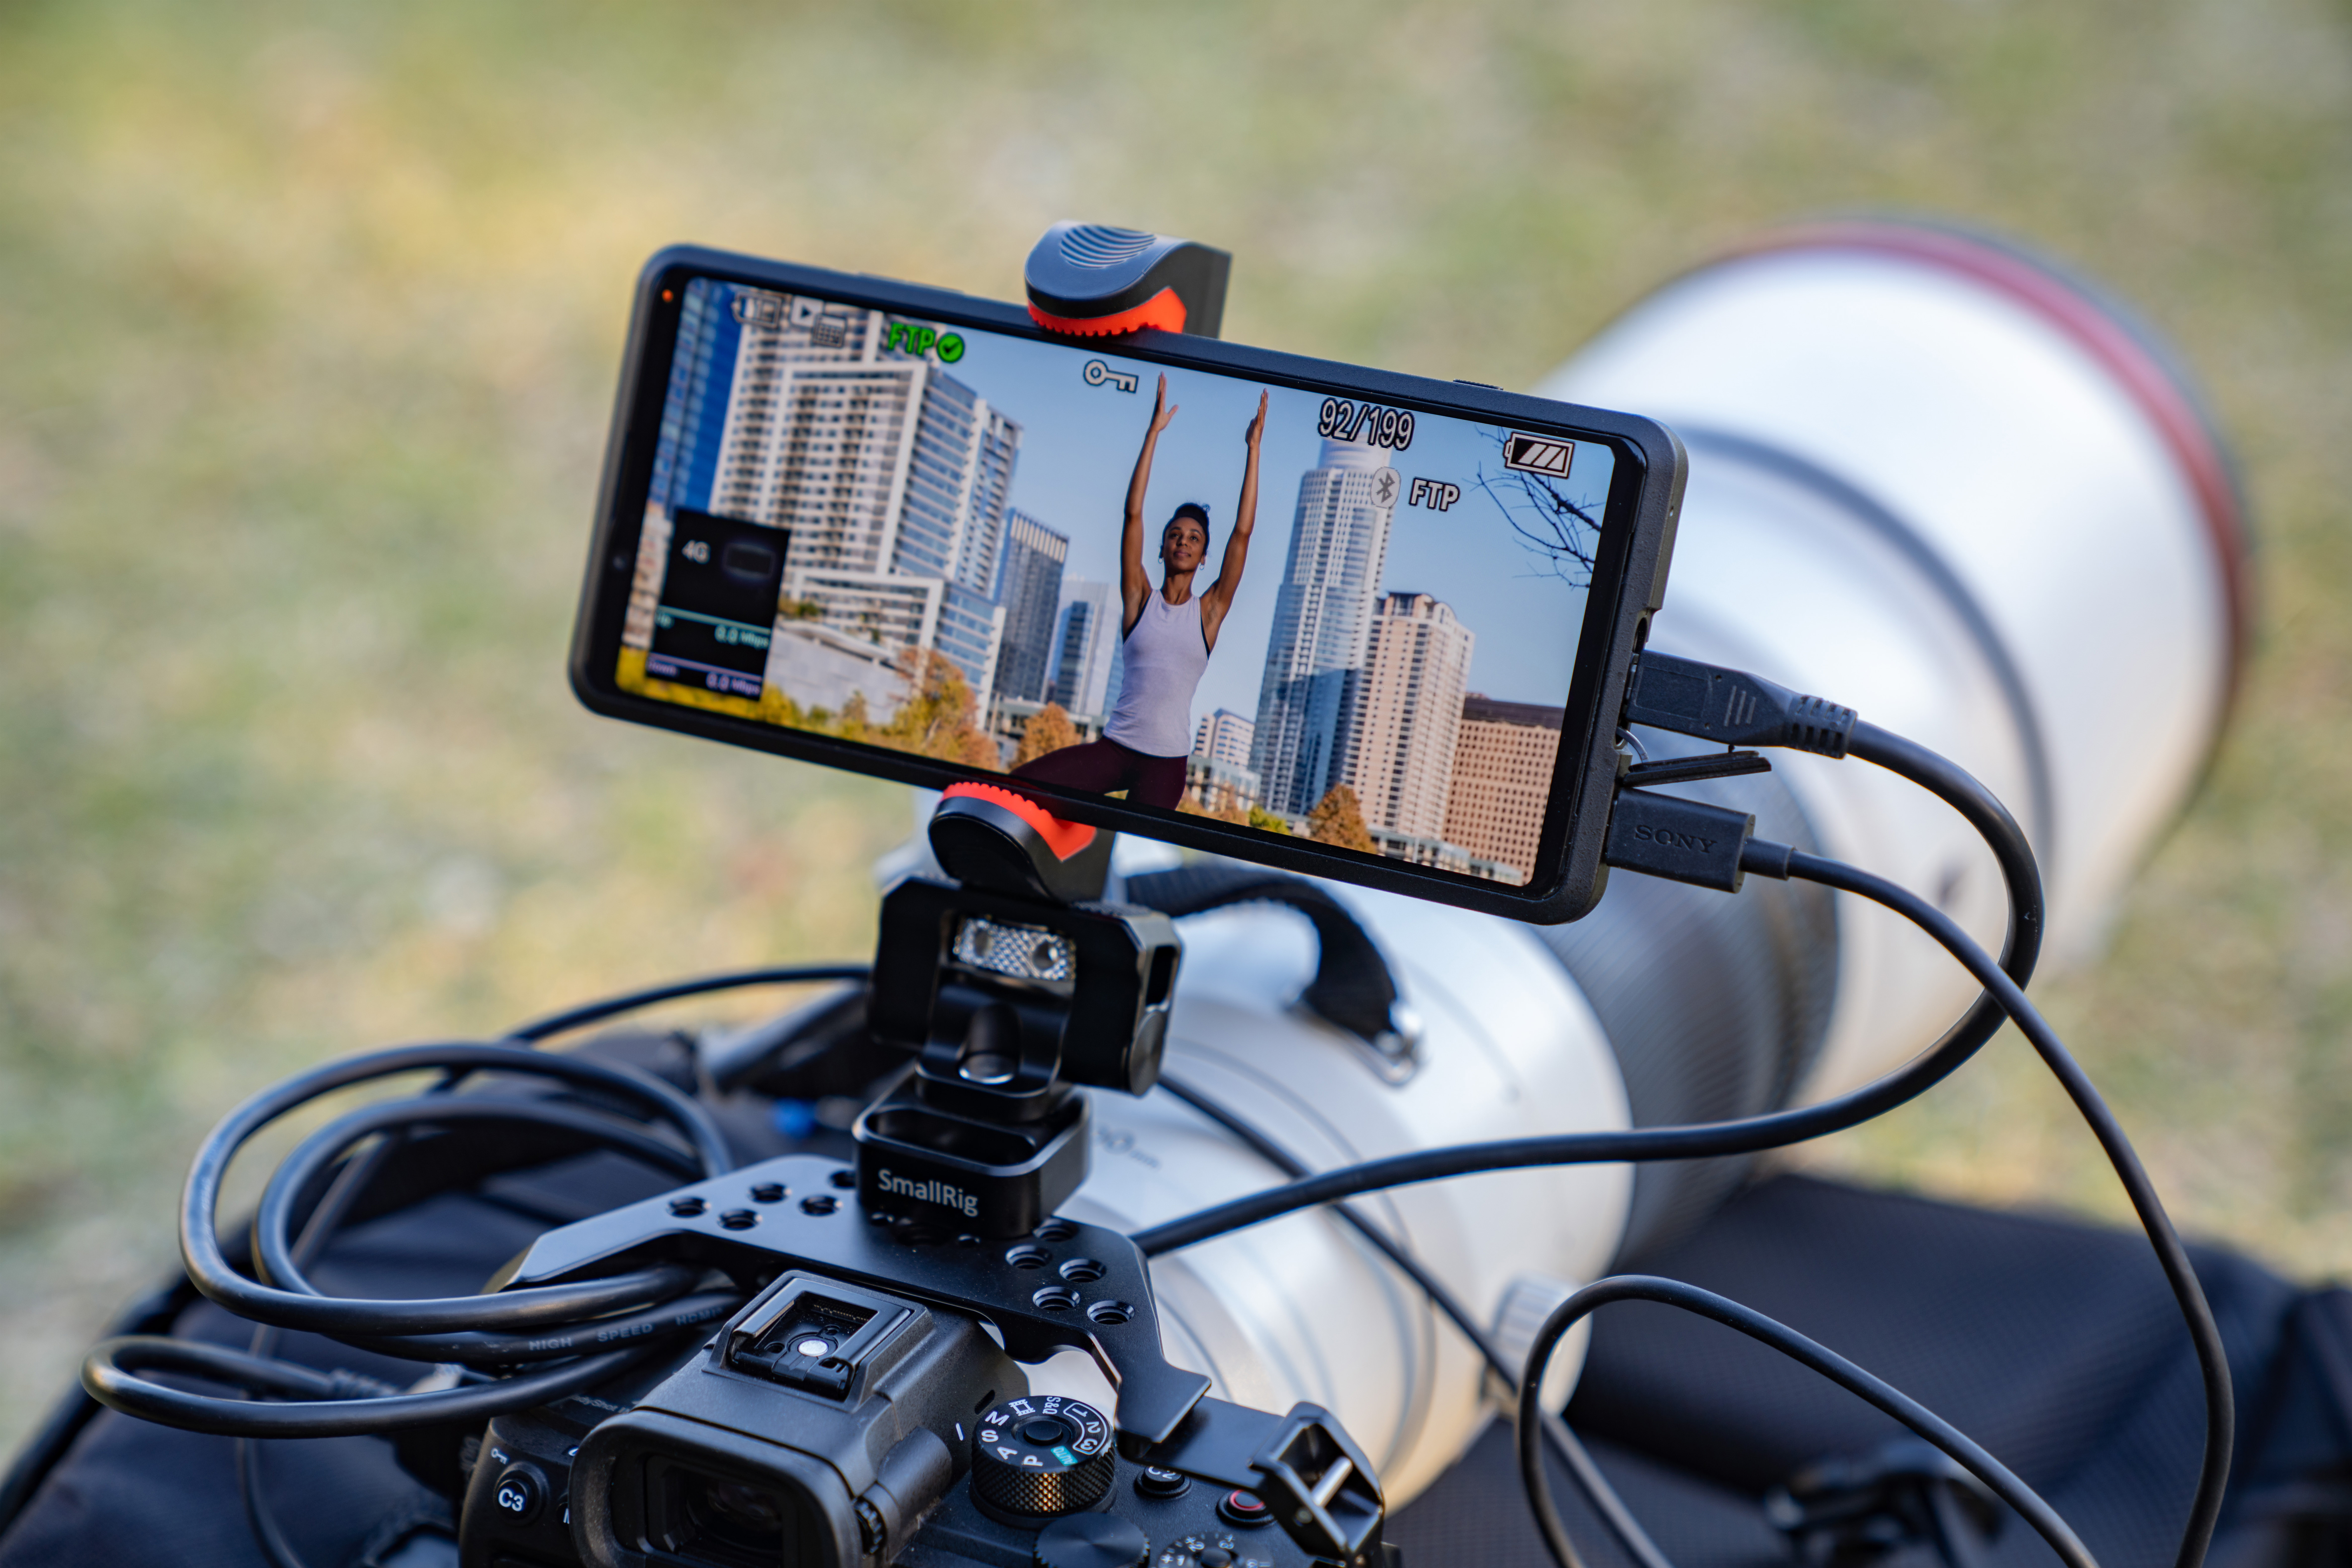 اکسپریا پرو / Xperia Pro سونی در حالت افقی روی دوربین در دنیای واقعی